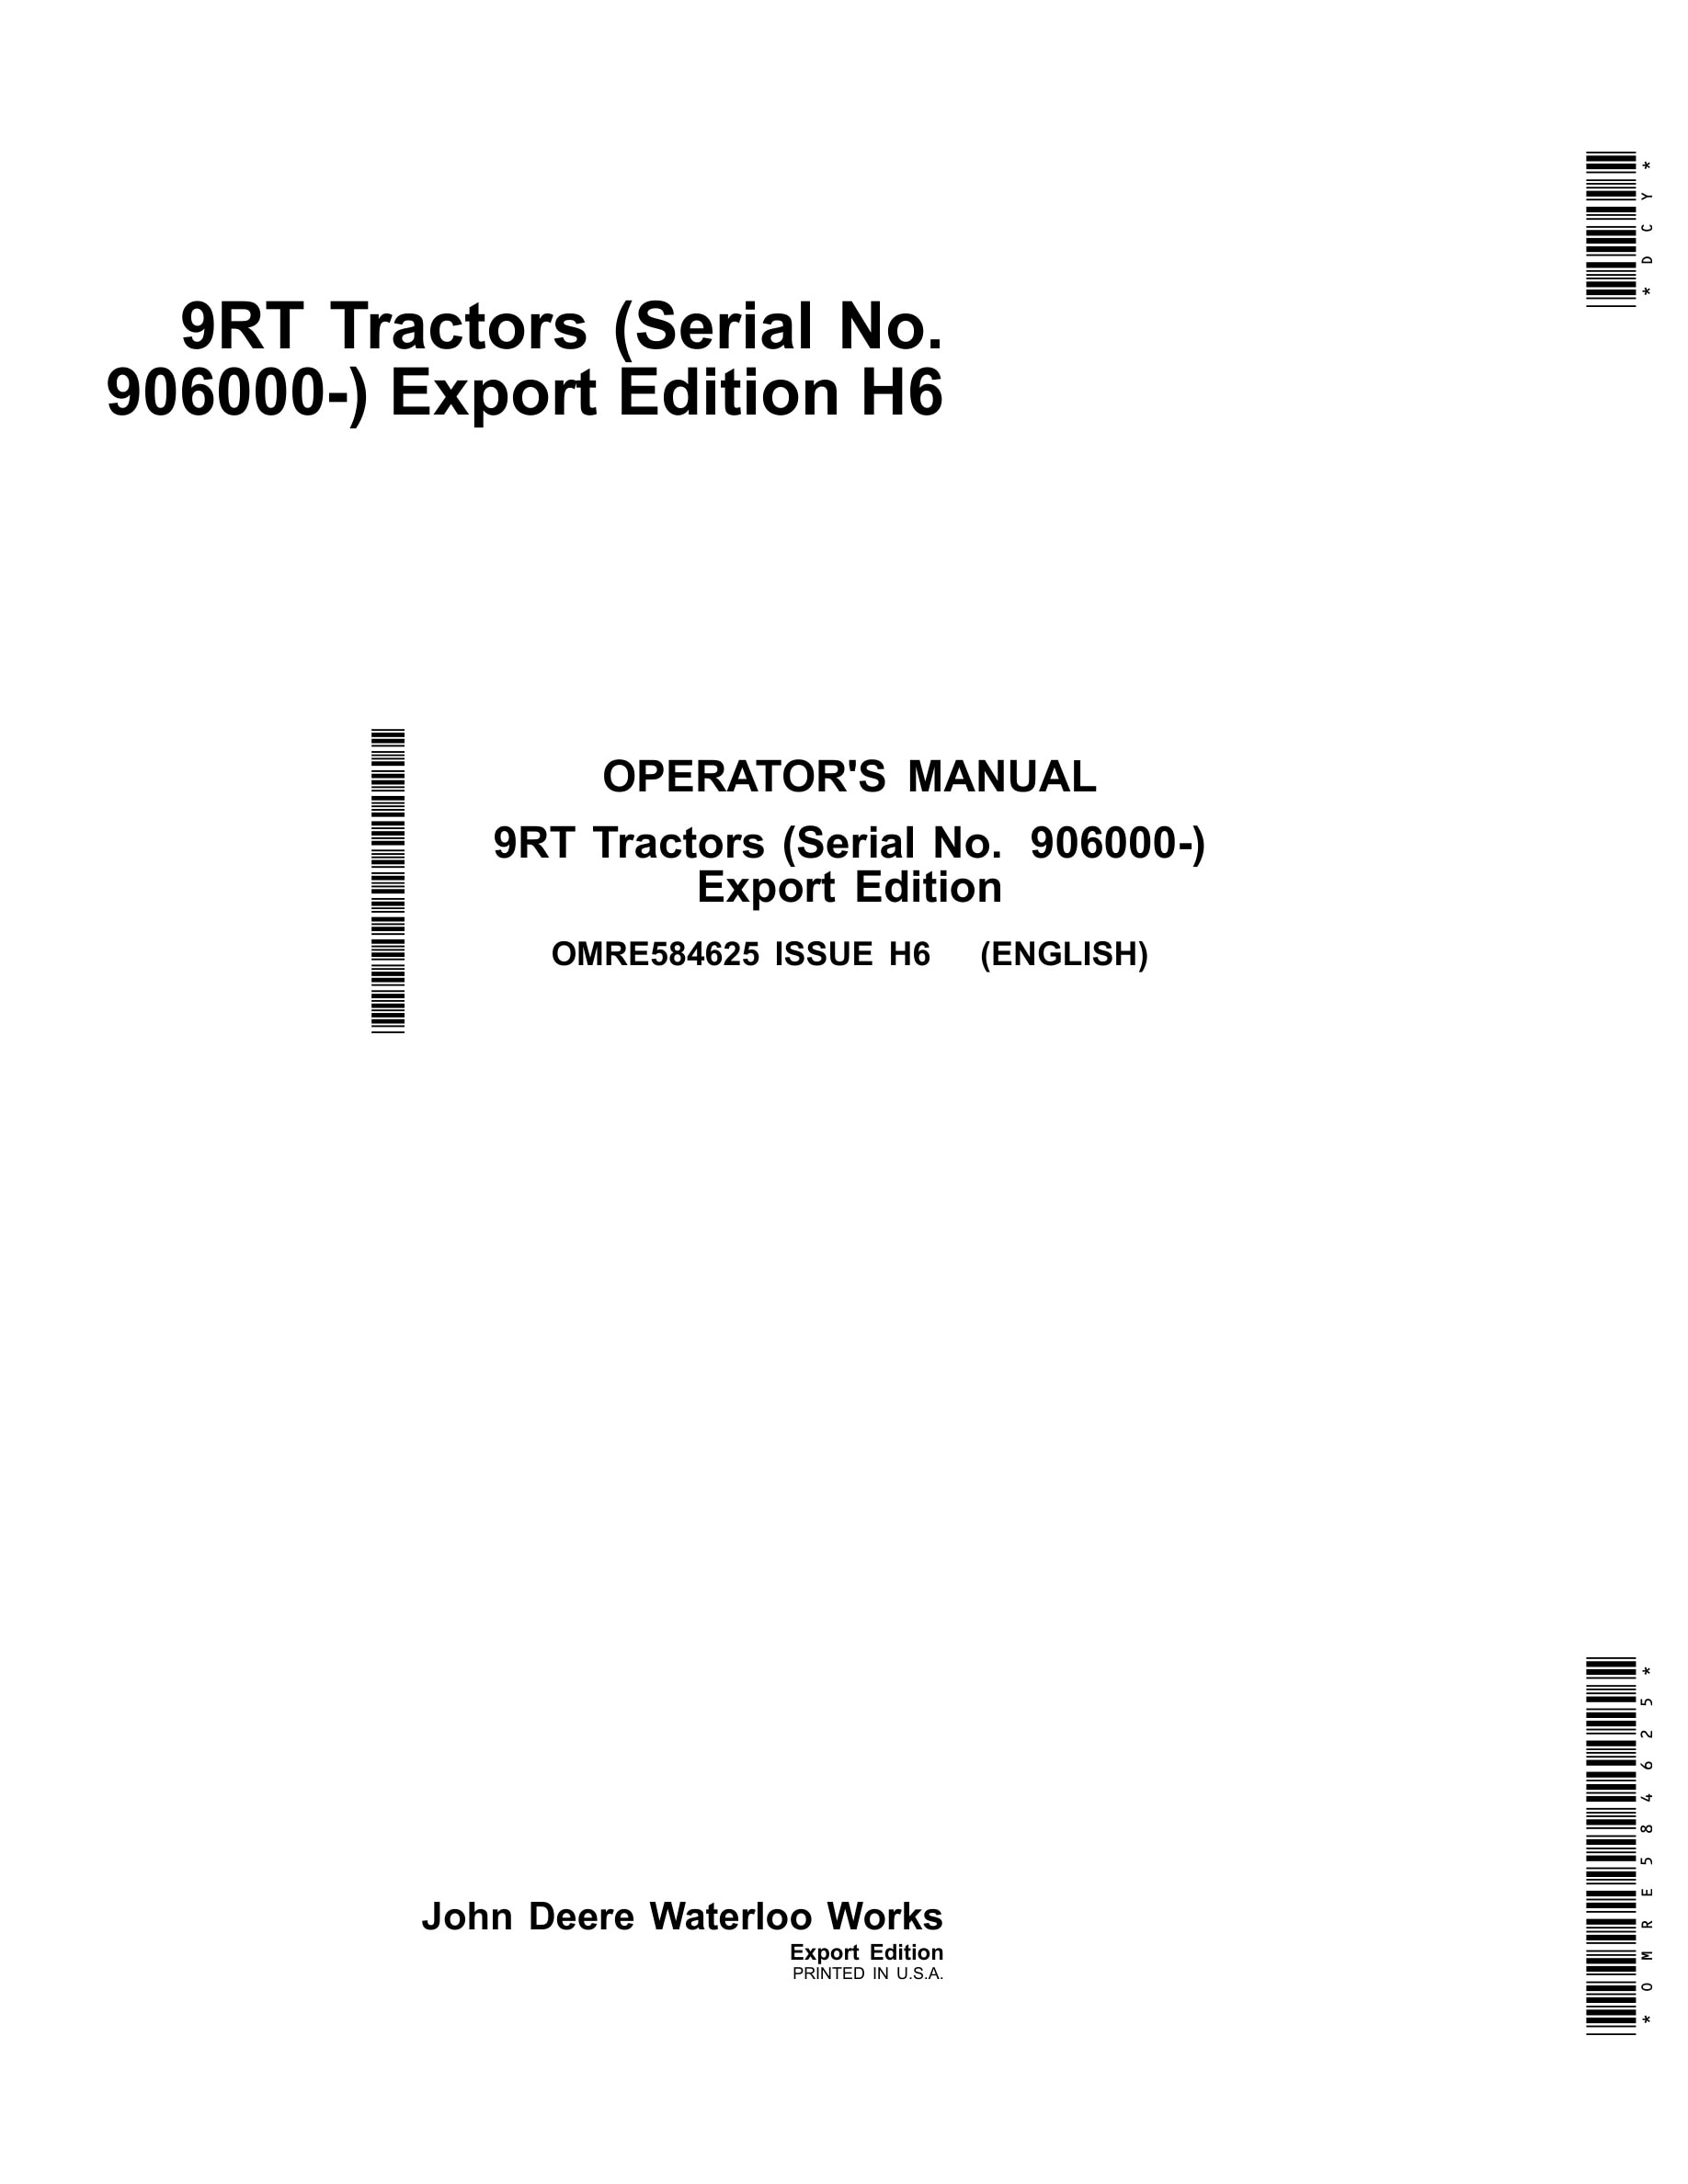 John Deere 9rt Tractors Operator Manuals OMRE584625-1